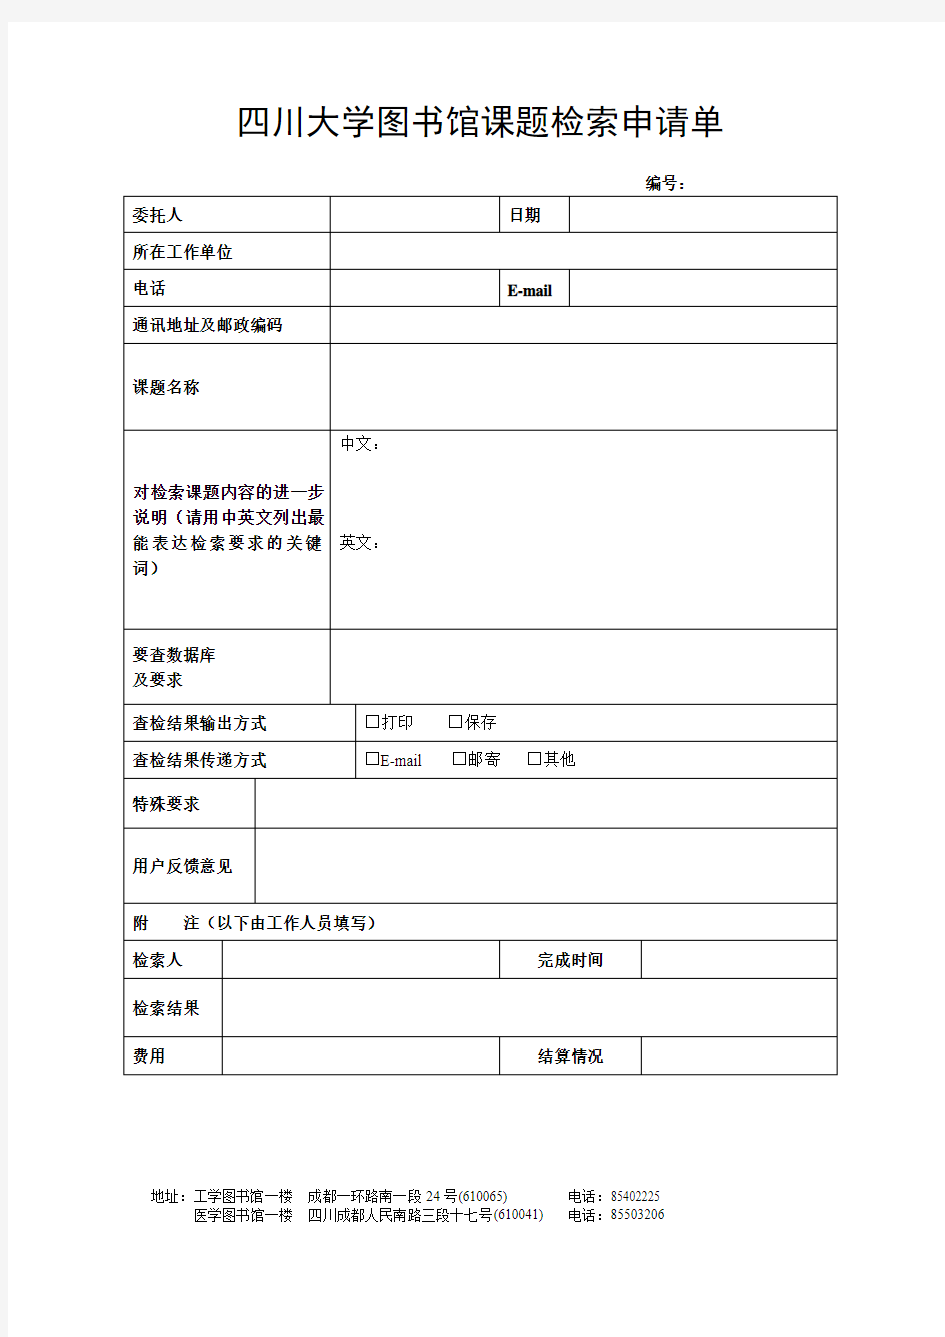 四川大学图书馆课题检索申请单